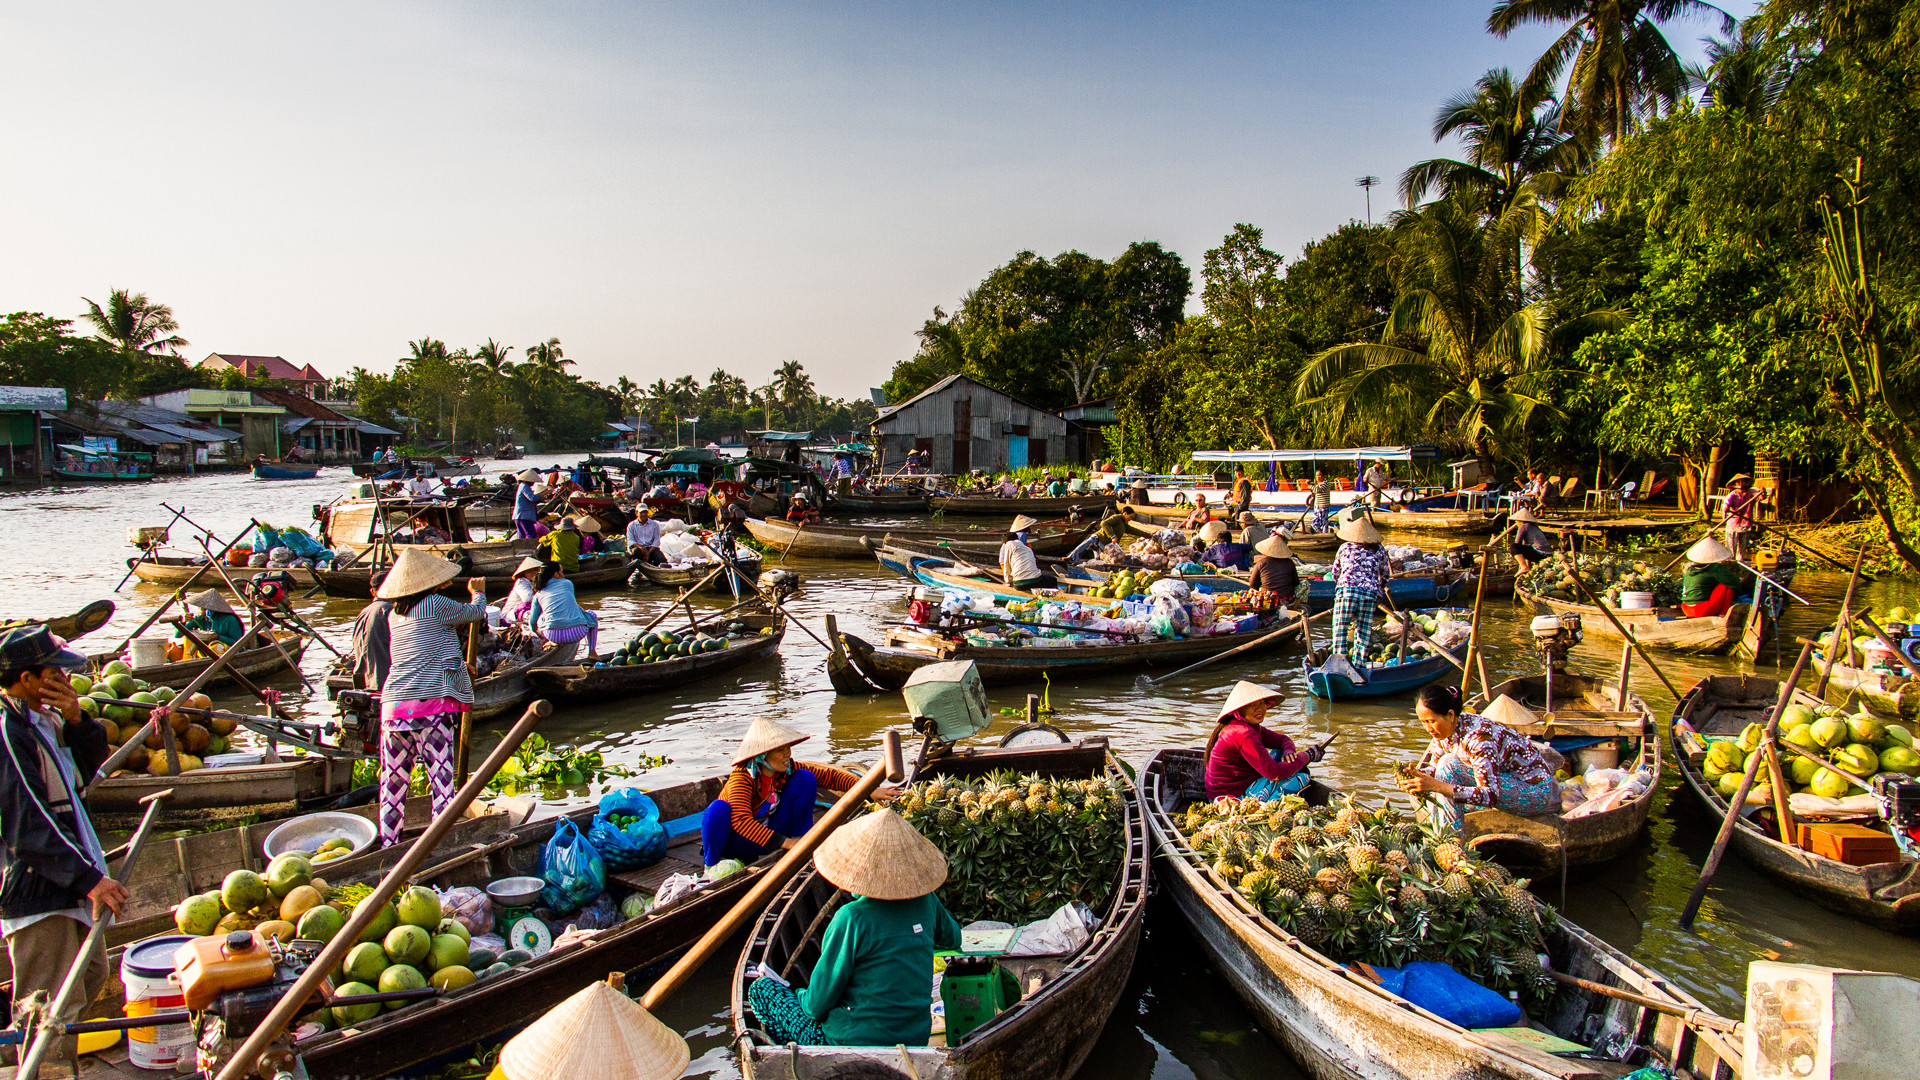 Tra On floating market, enduring cultural trait of Vietnam’s Mekong Delta